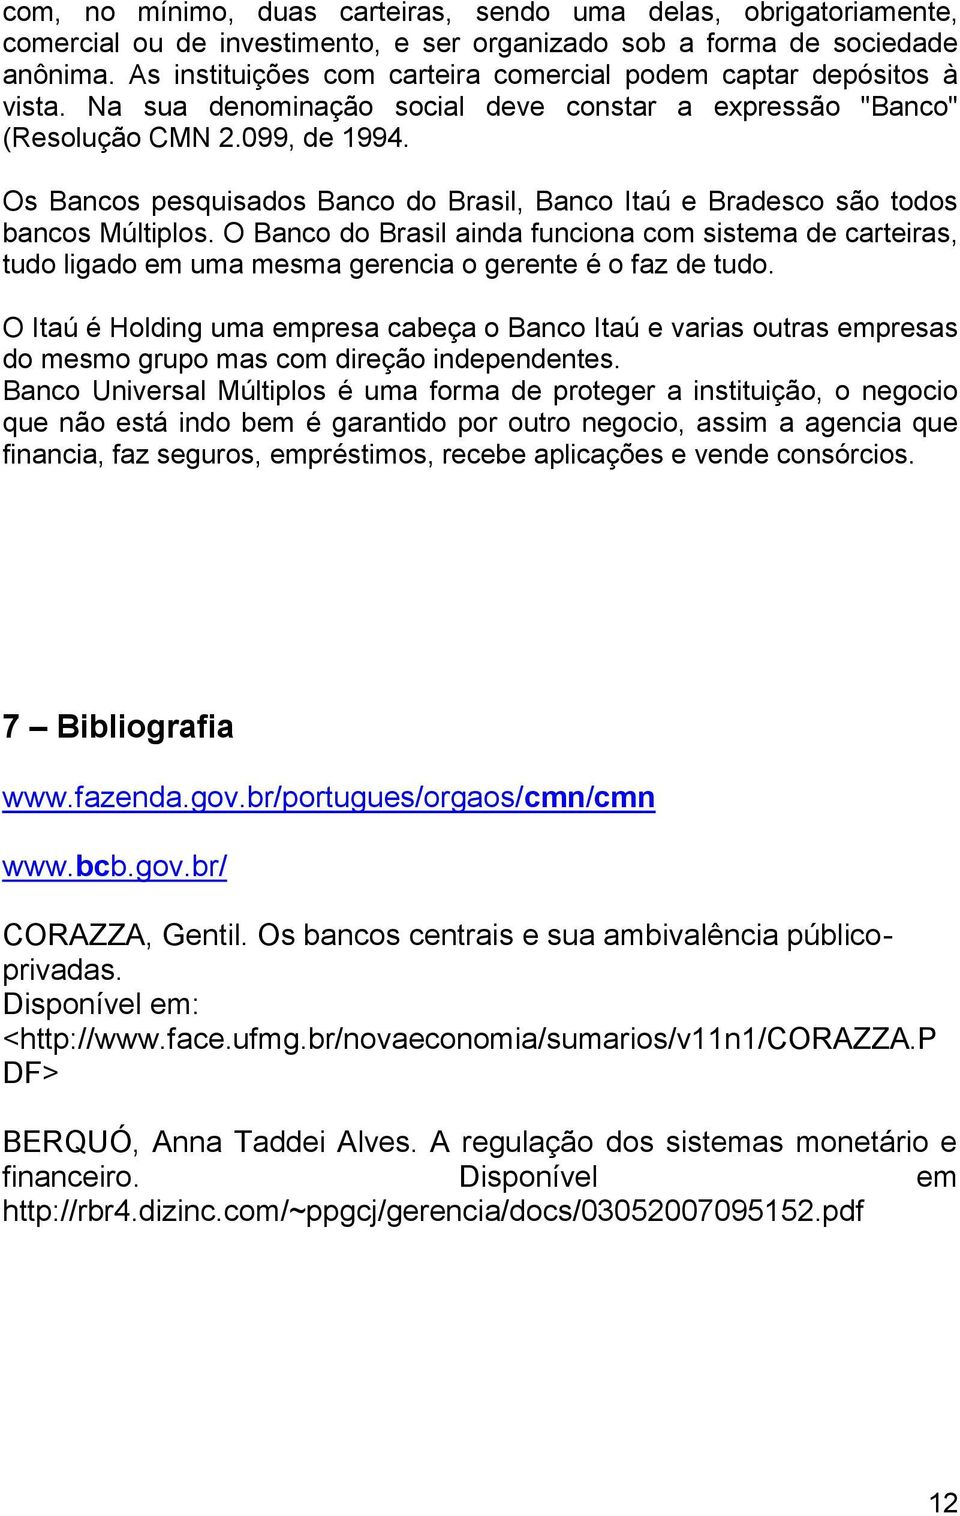 Os Bancos pesquisados Banco do Brasil, Banco Itaú e Bradesco são todos bancos Múltiplos.